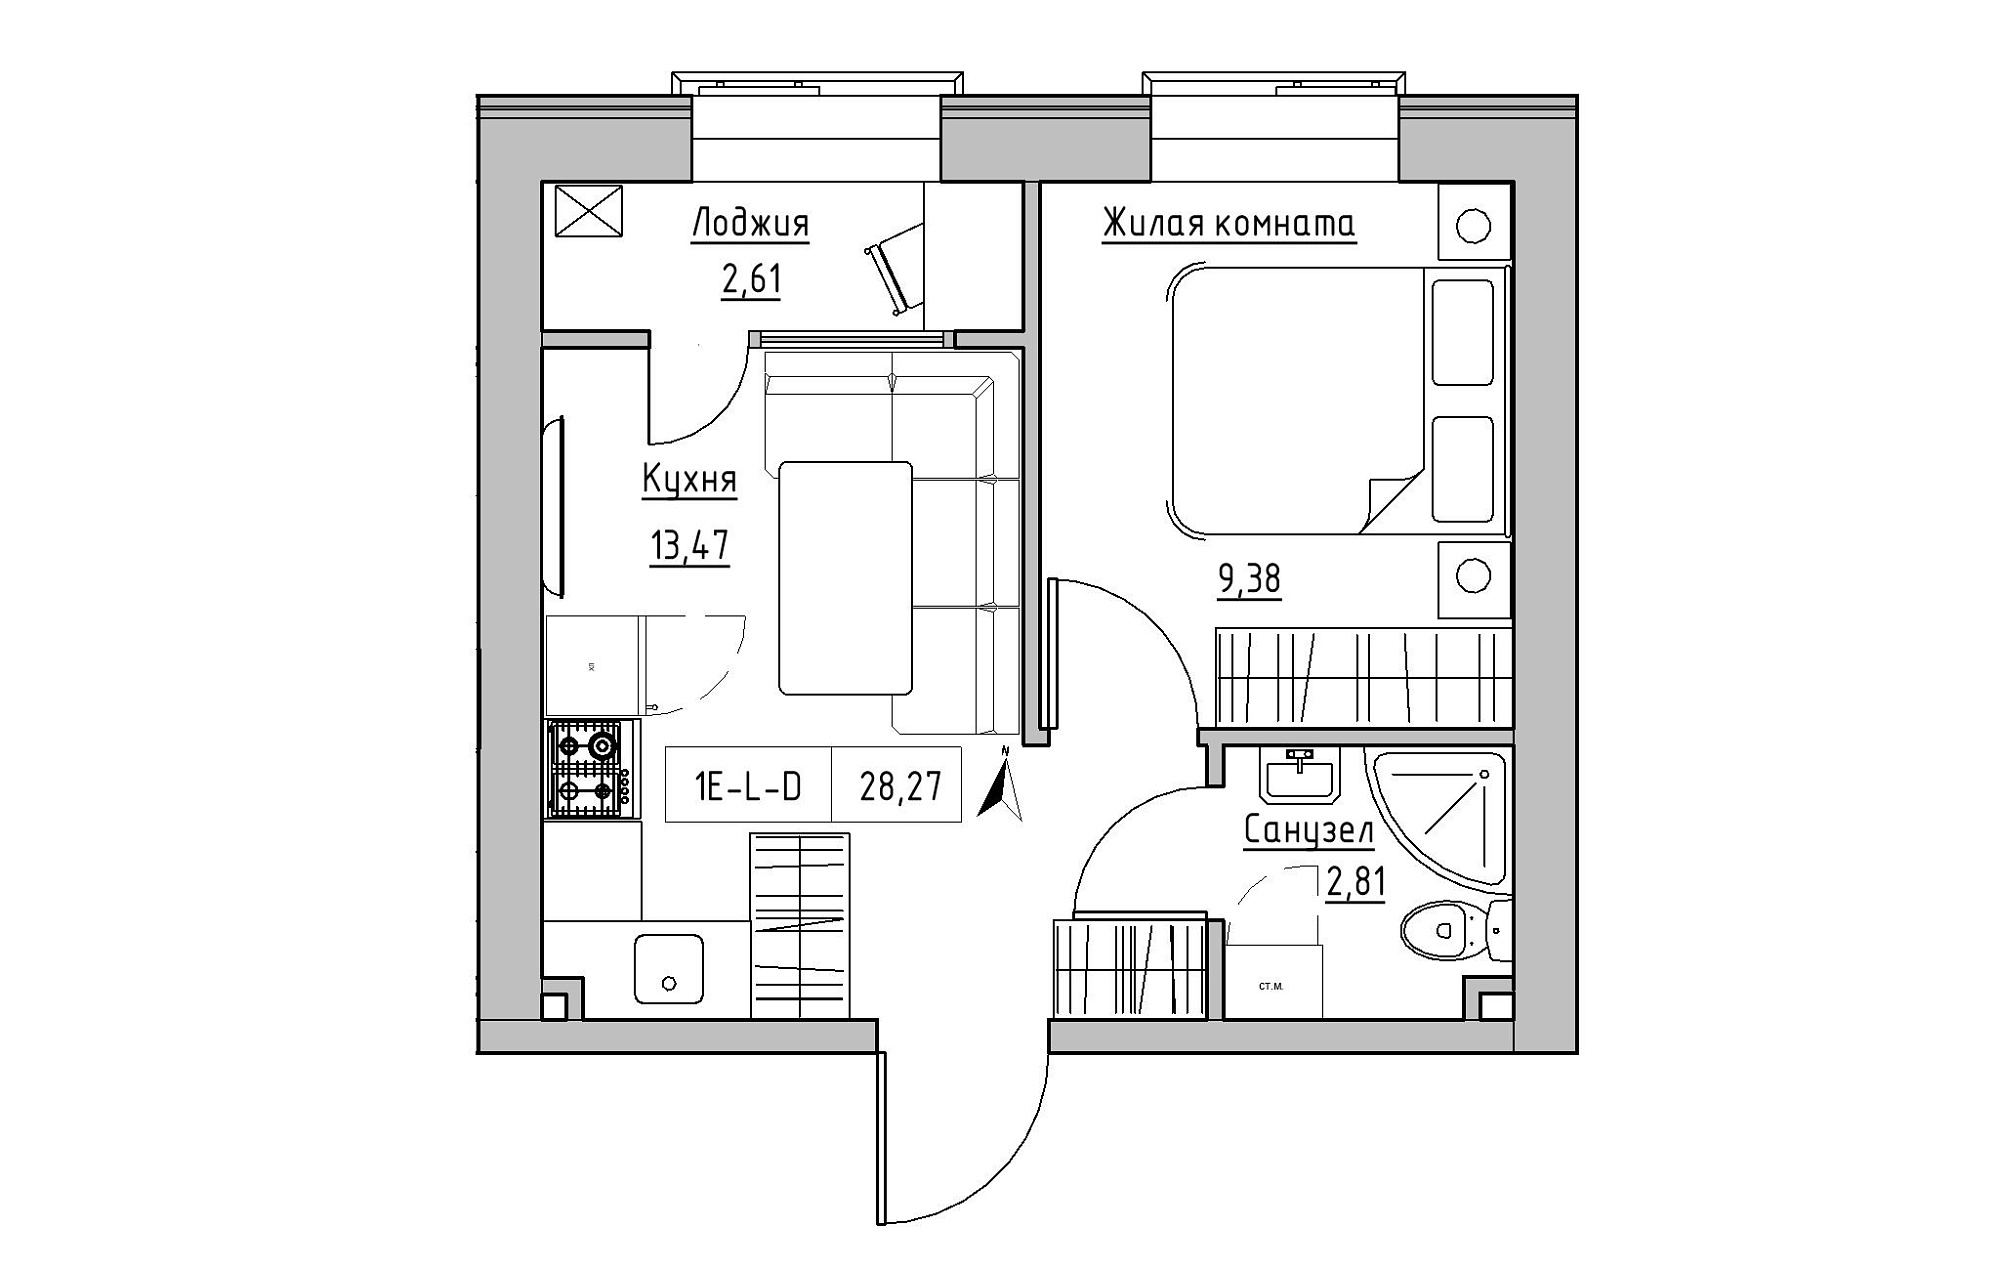 Планування 1-к квартира площею 28.27м2, KS-019-04/0015.